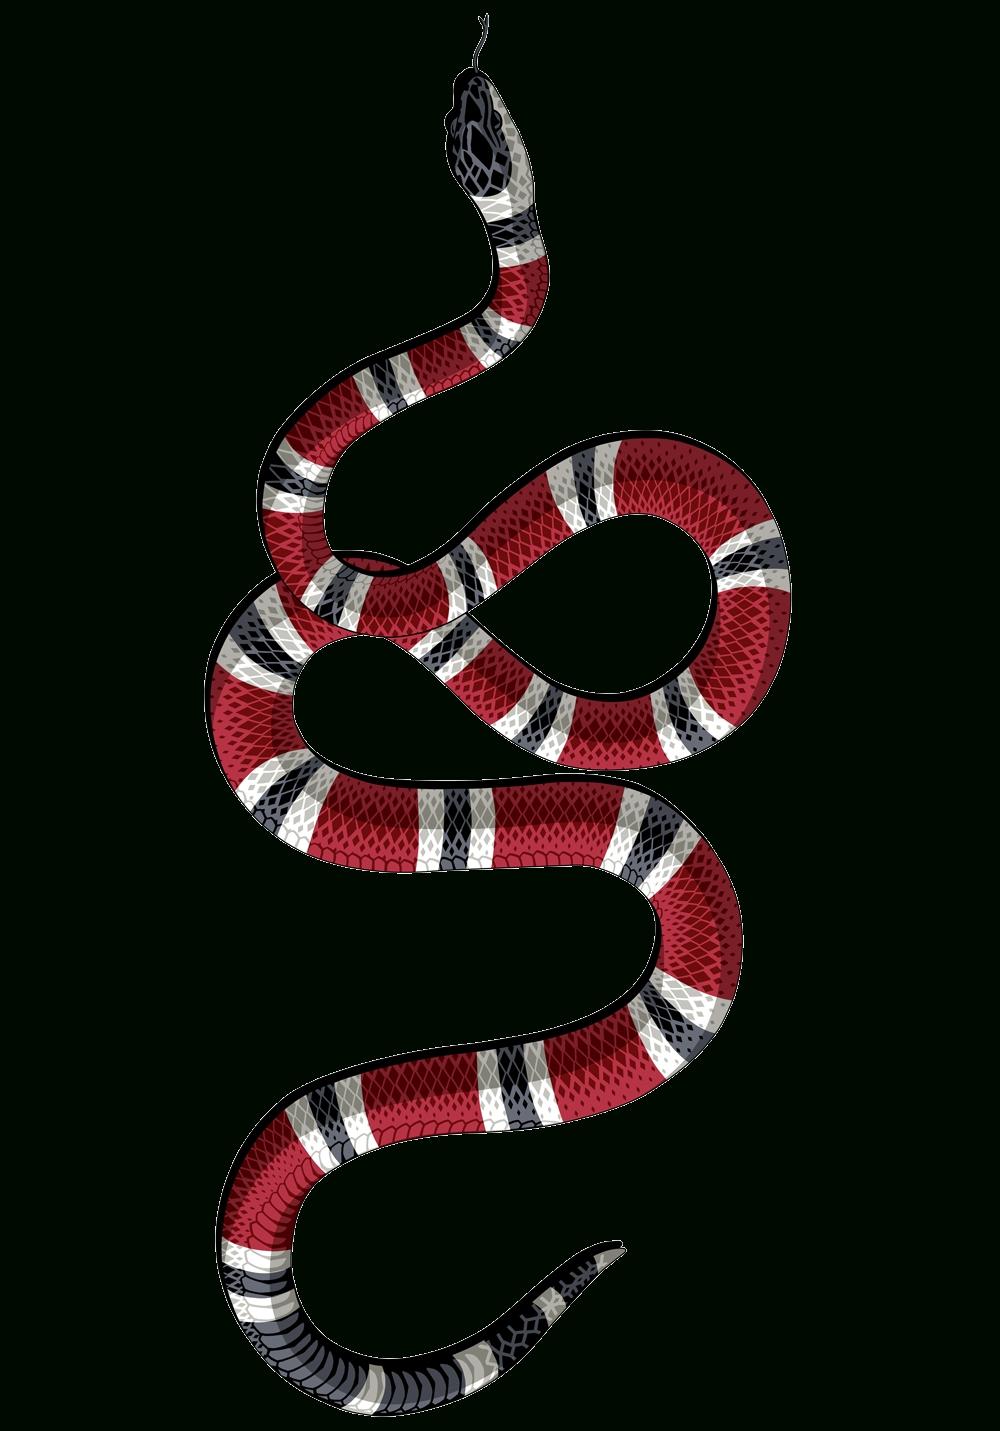 Fond Decran Gucci Serpent - New Fond D'ecran Wallpaper